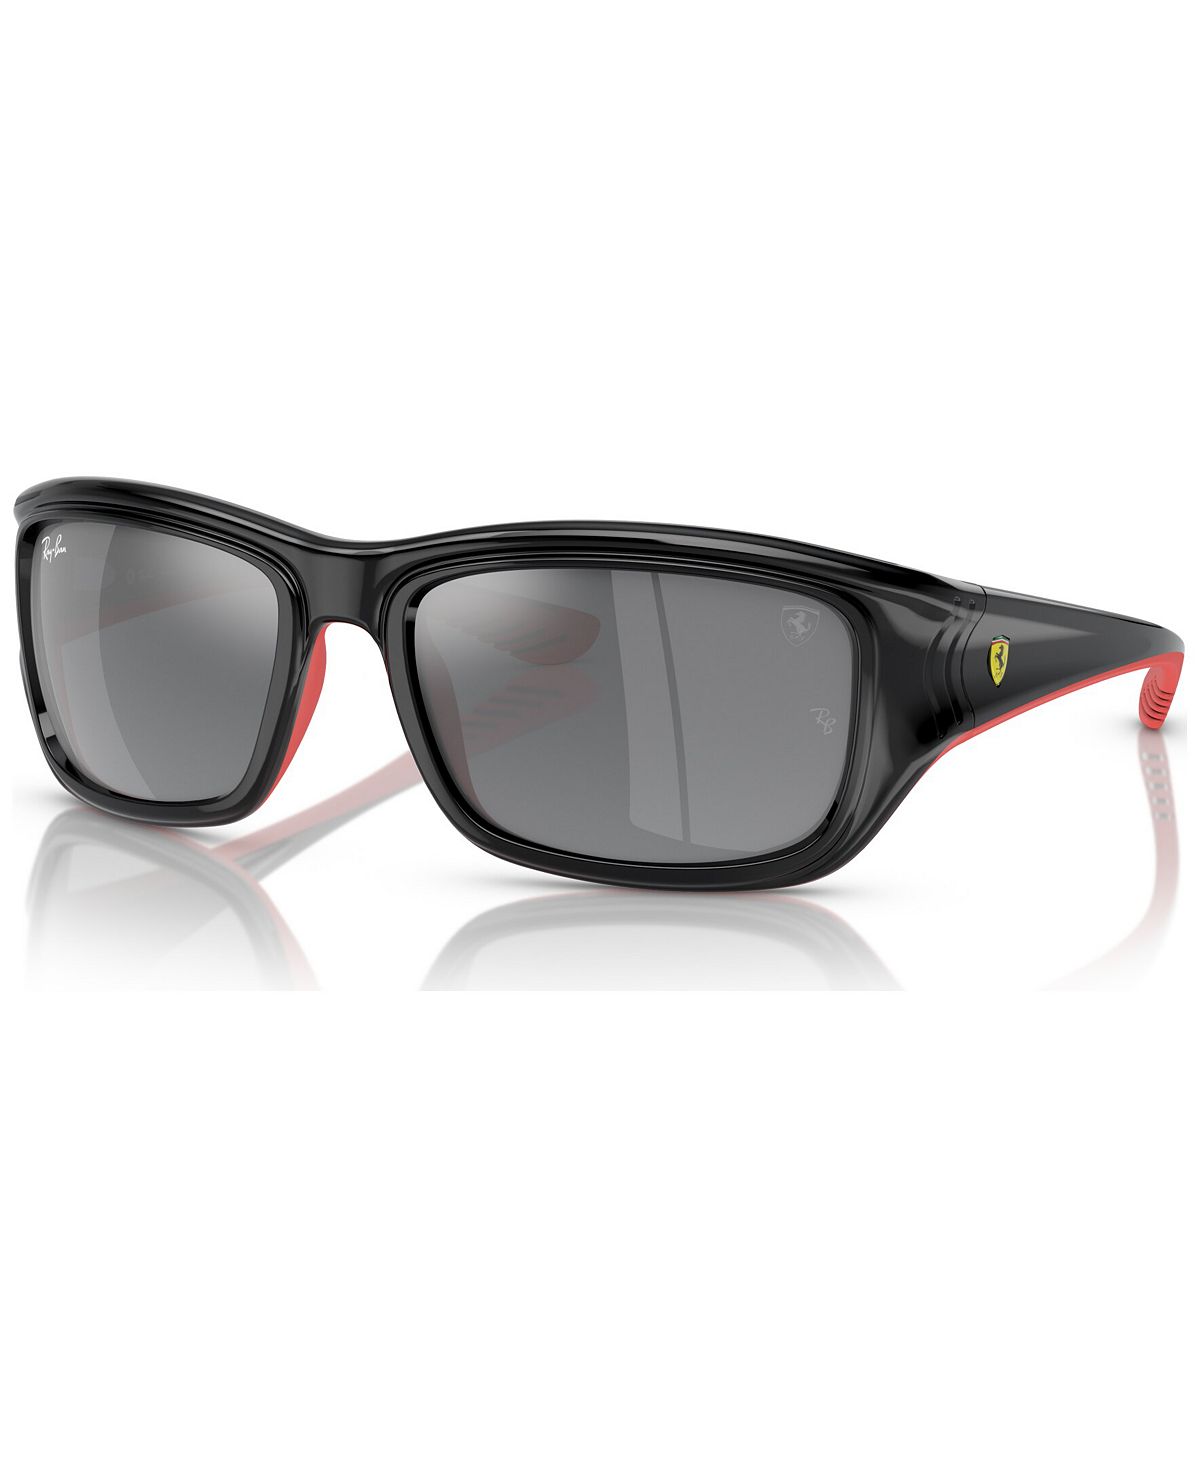 Мужские солнцезащитные очки, RB4405M Коллекция Scuderia Ferrari Ray-Ban